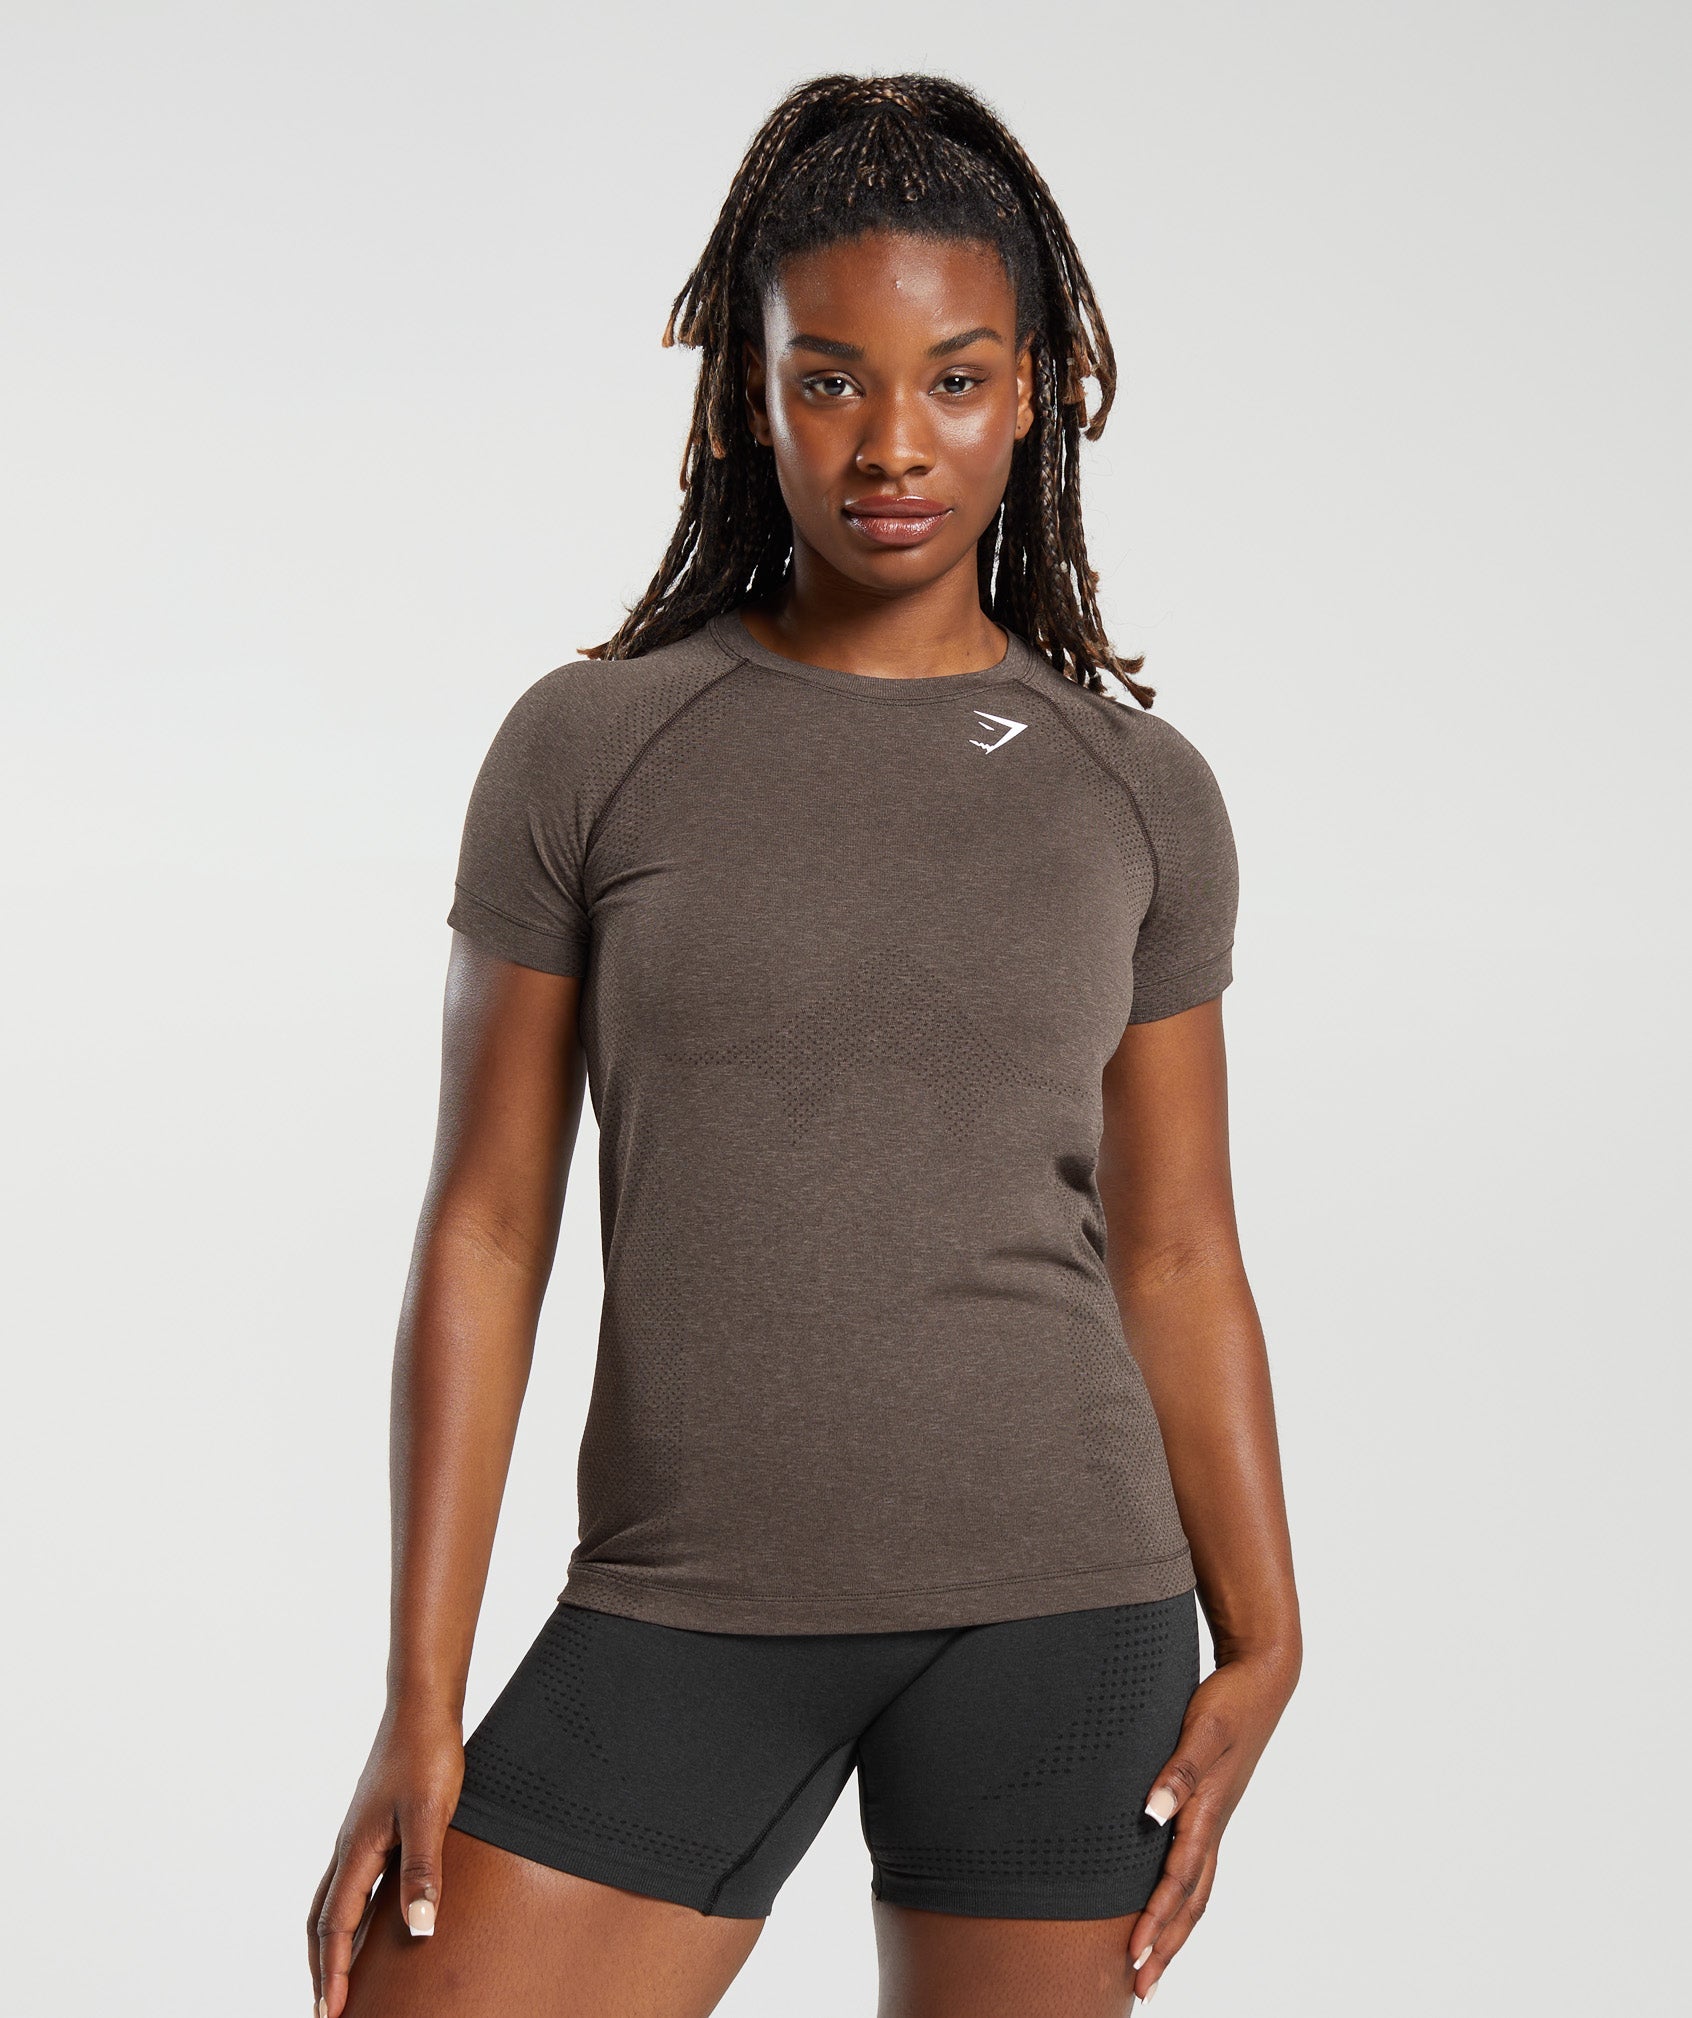 Women's Running Tops & Shirts - Gymshark